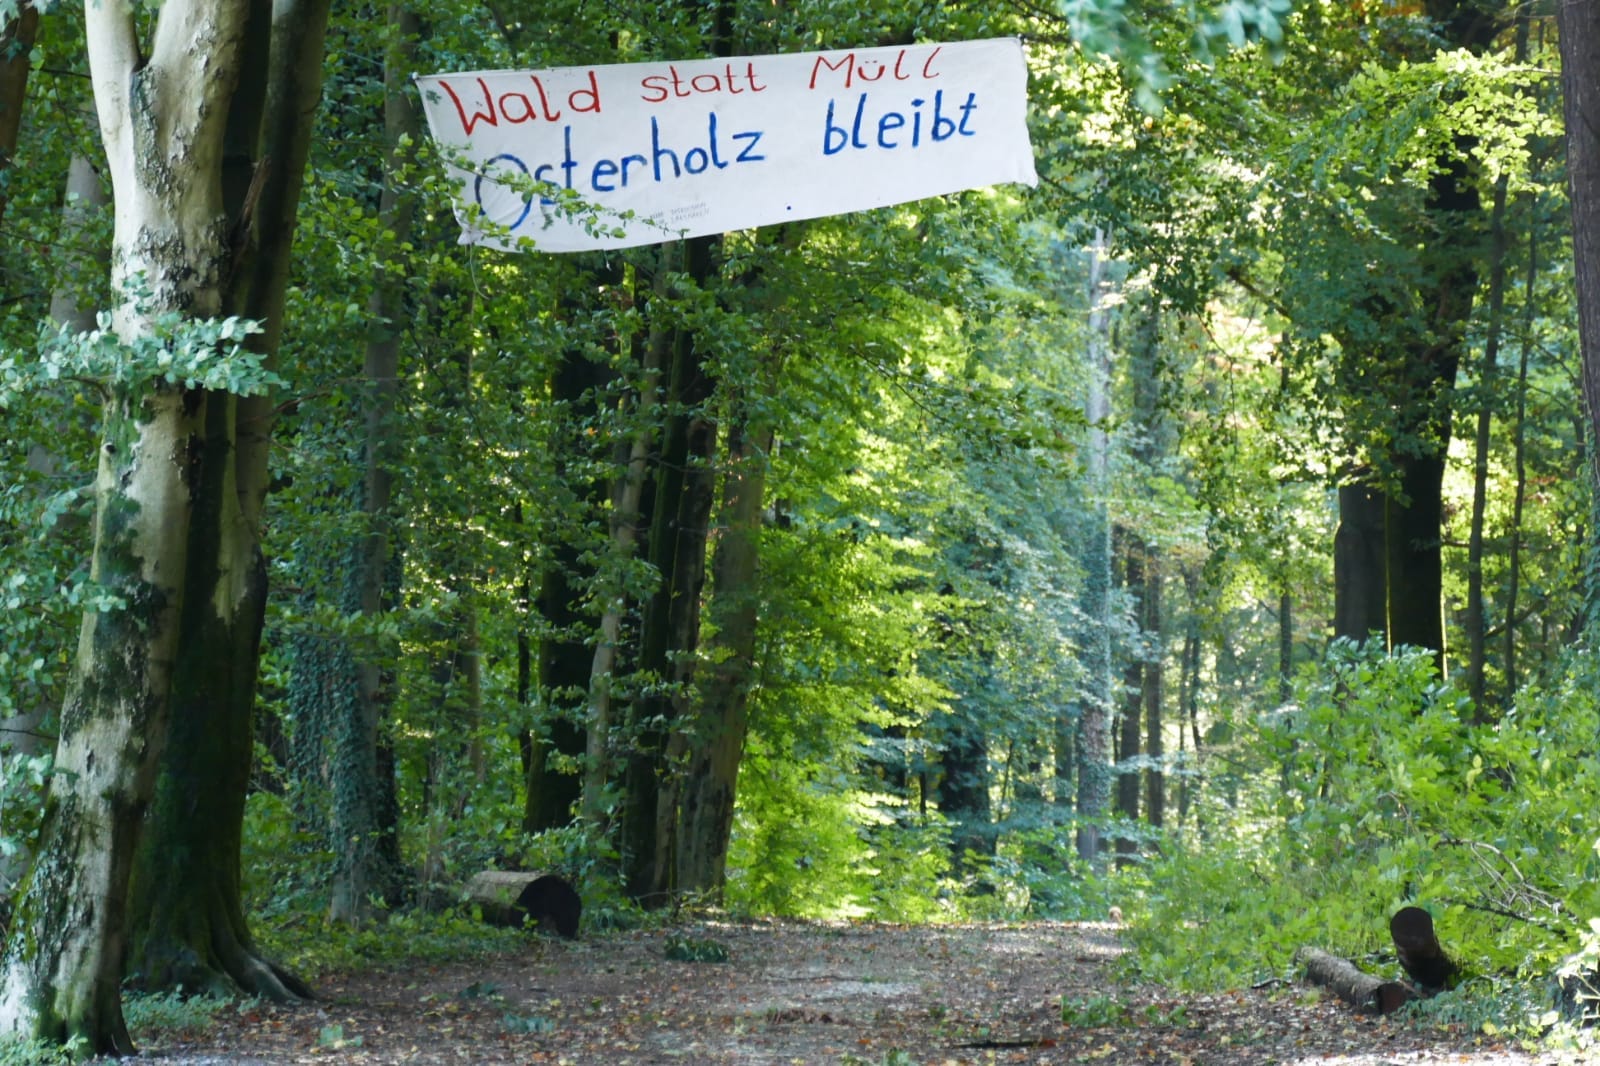 "Wald statt Müll, Osterholz bleibt" heißt es auf einem Banner: Osterholz soll als Halde herhalten.